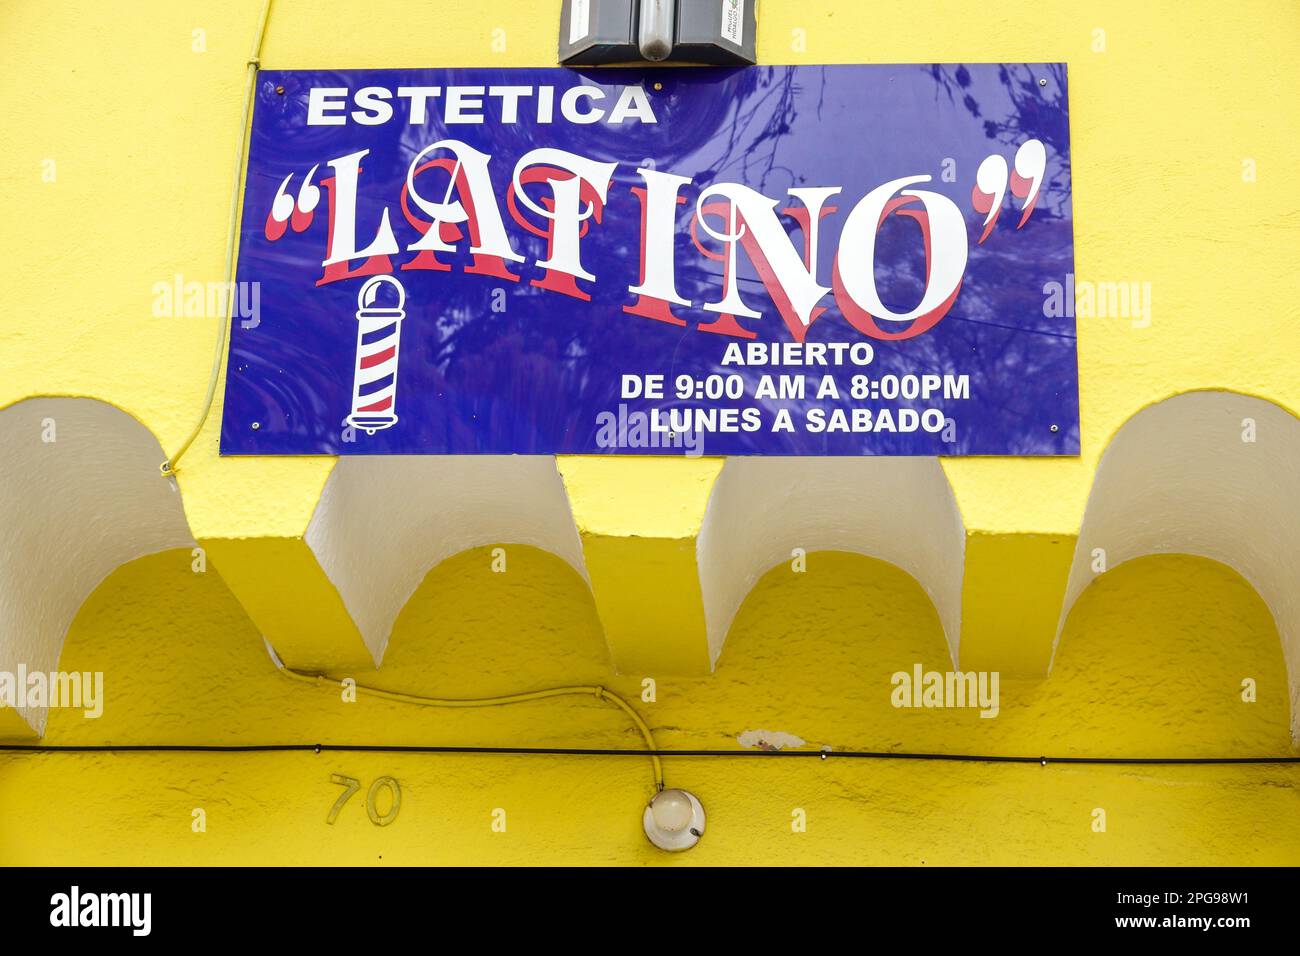 Mexiko-Stadt, Estetica Latino, Friseur, Schilder-Informationen, Werbung, Werbung Stockfoto